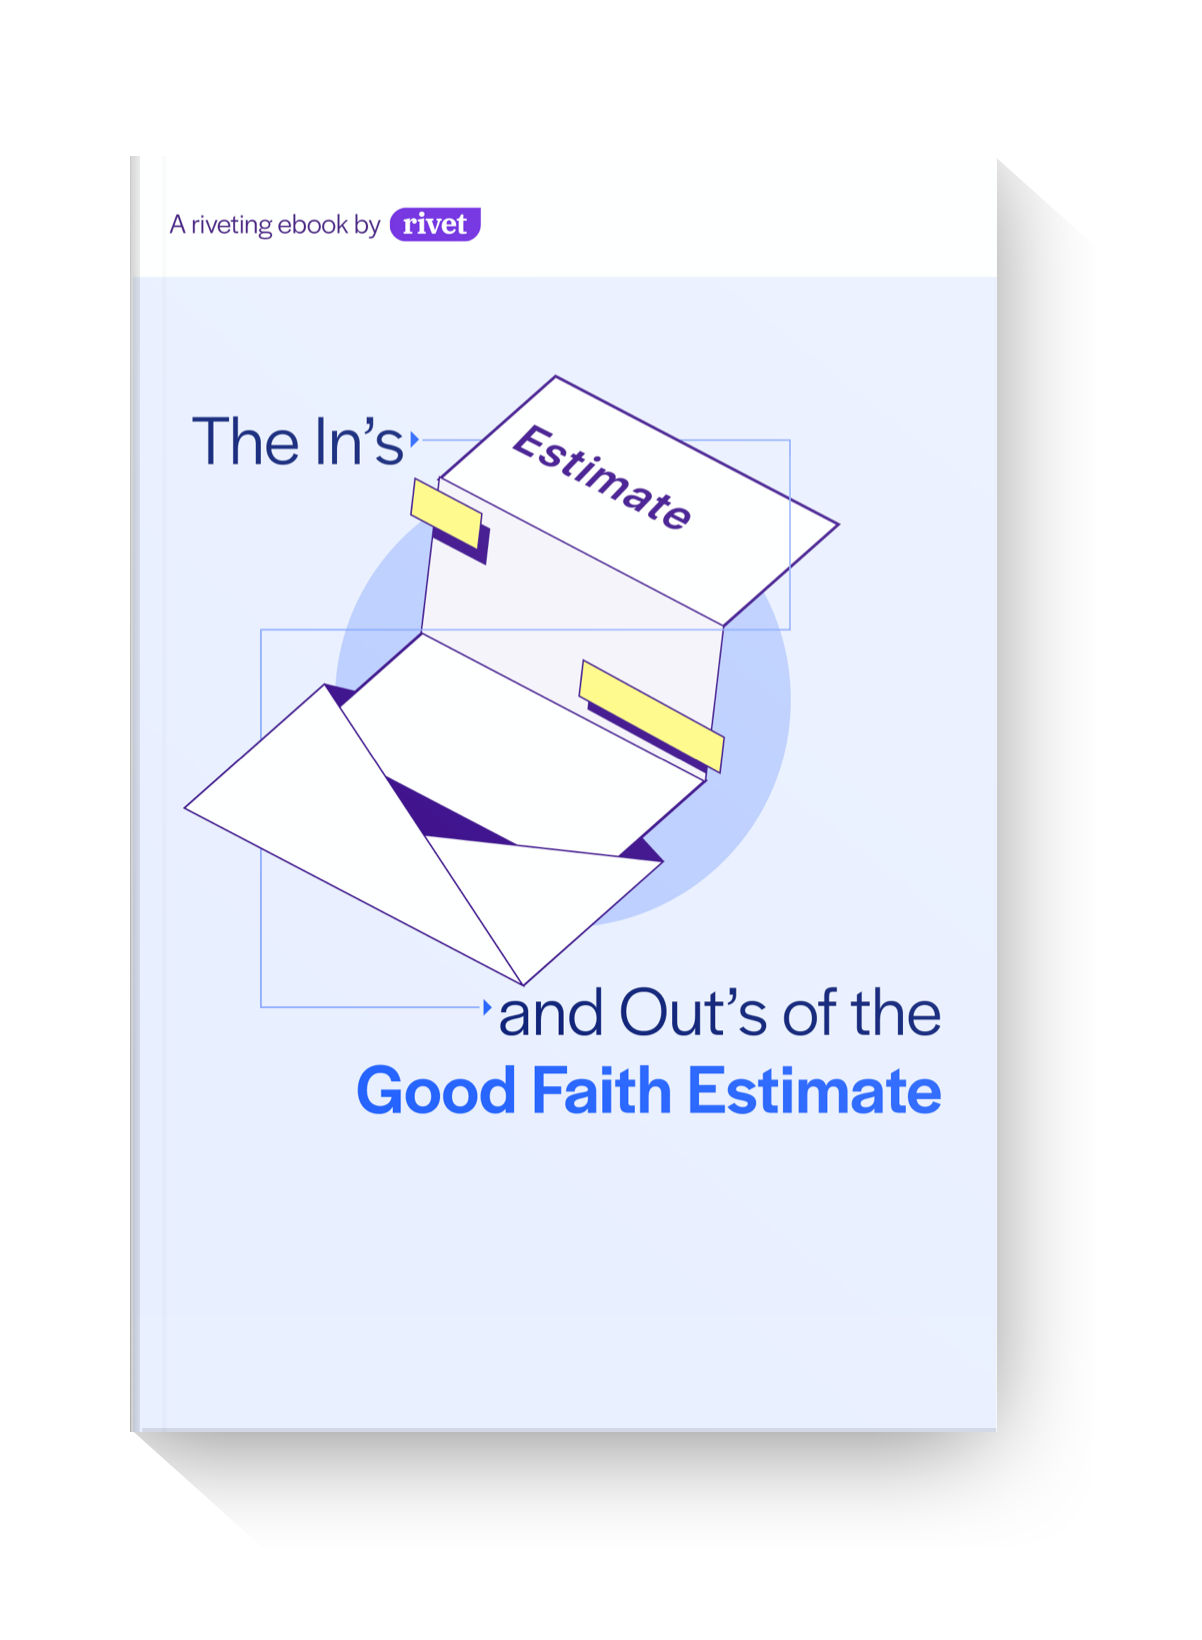 Mockup-good faith estimate